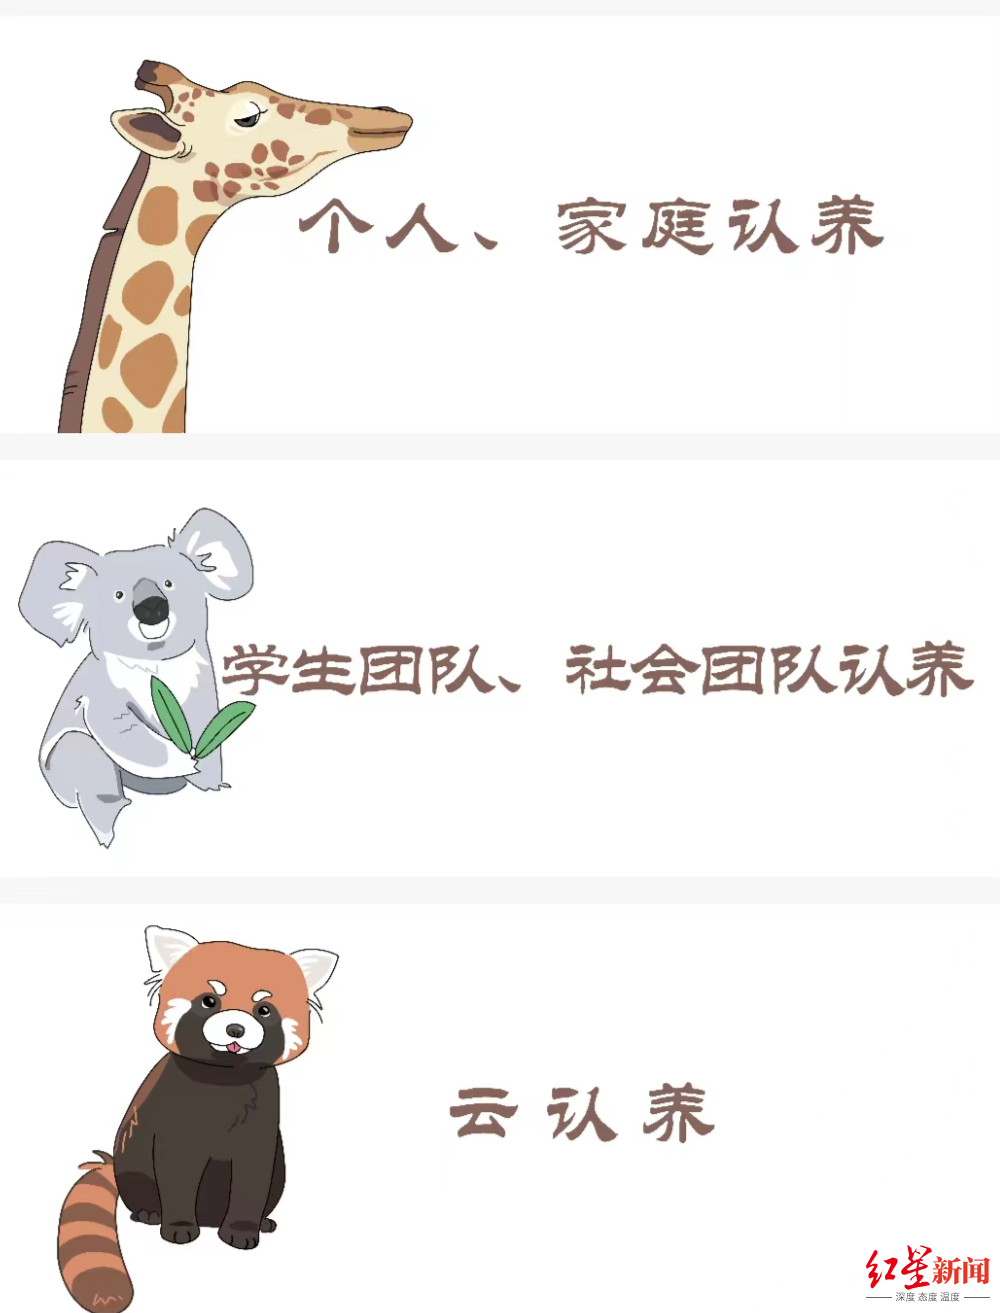 南京一动物园直播筹款：揭不开锅了，动物园直播筹款引关注